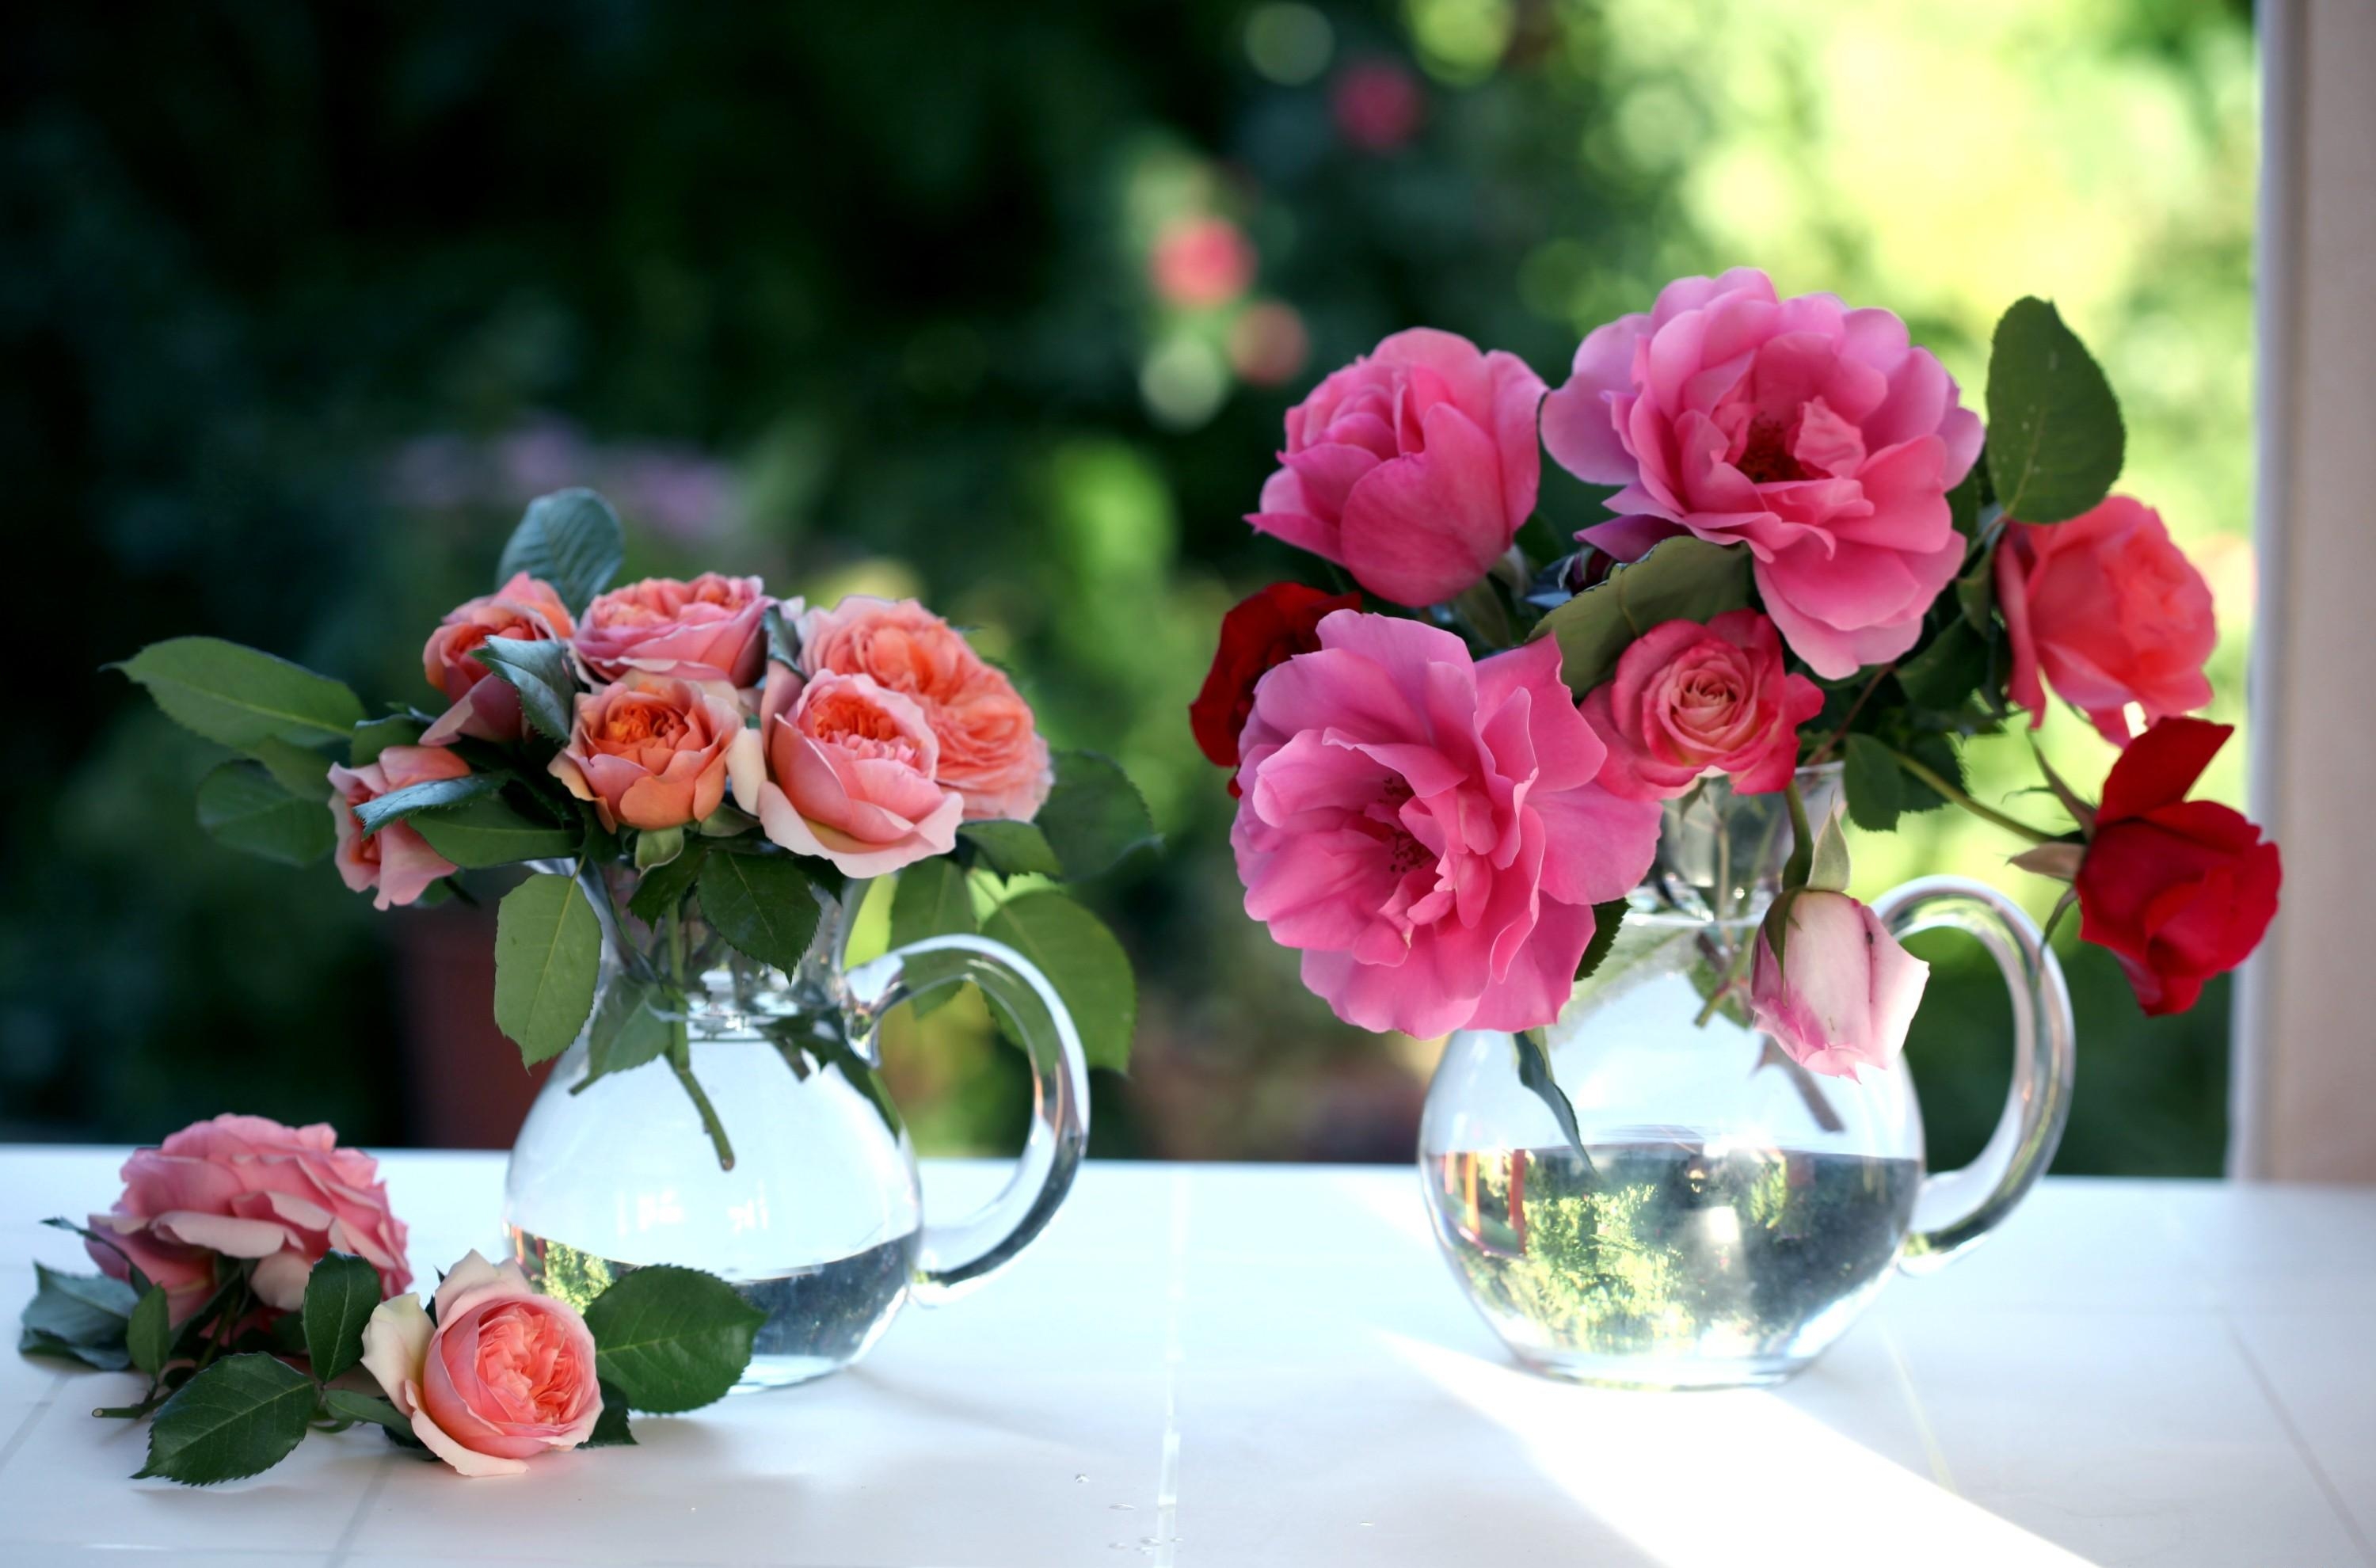 jugs, window, roses, flowers, bouquets Full HD